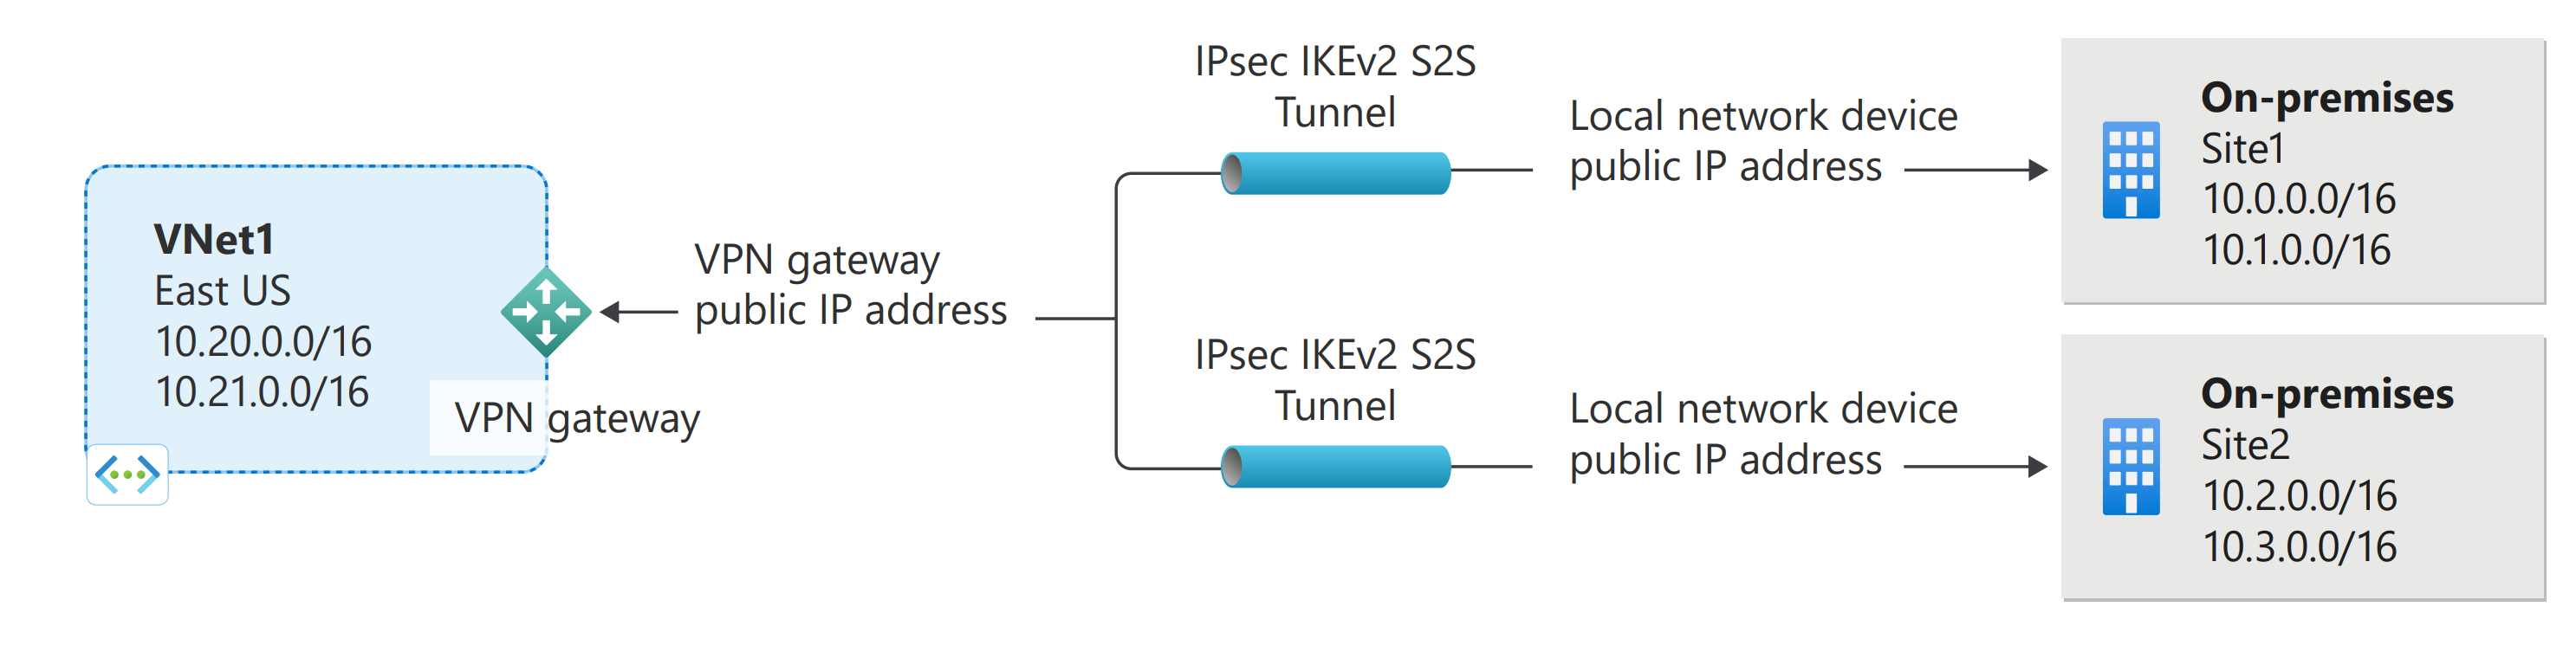 여러 사이트 간 Azure VPN Gateway 연결을 보여주는 다이어그램.